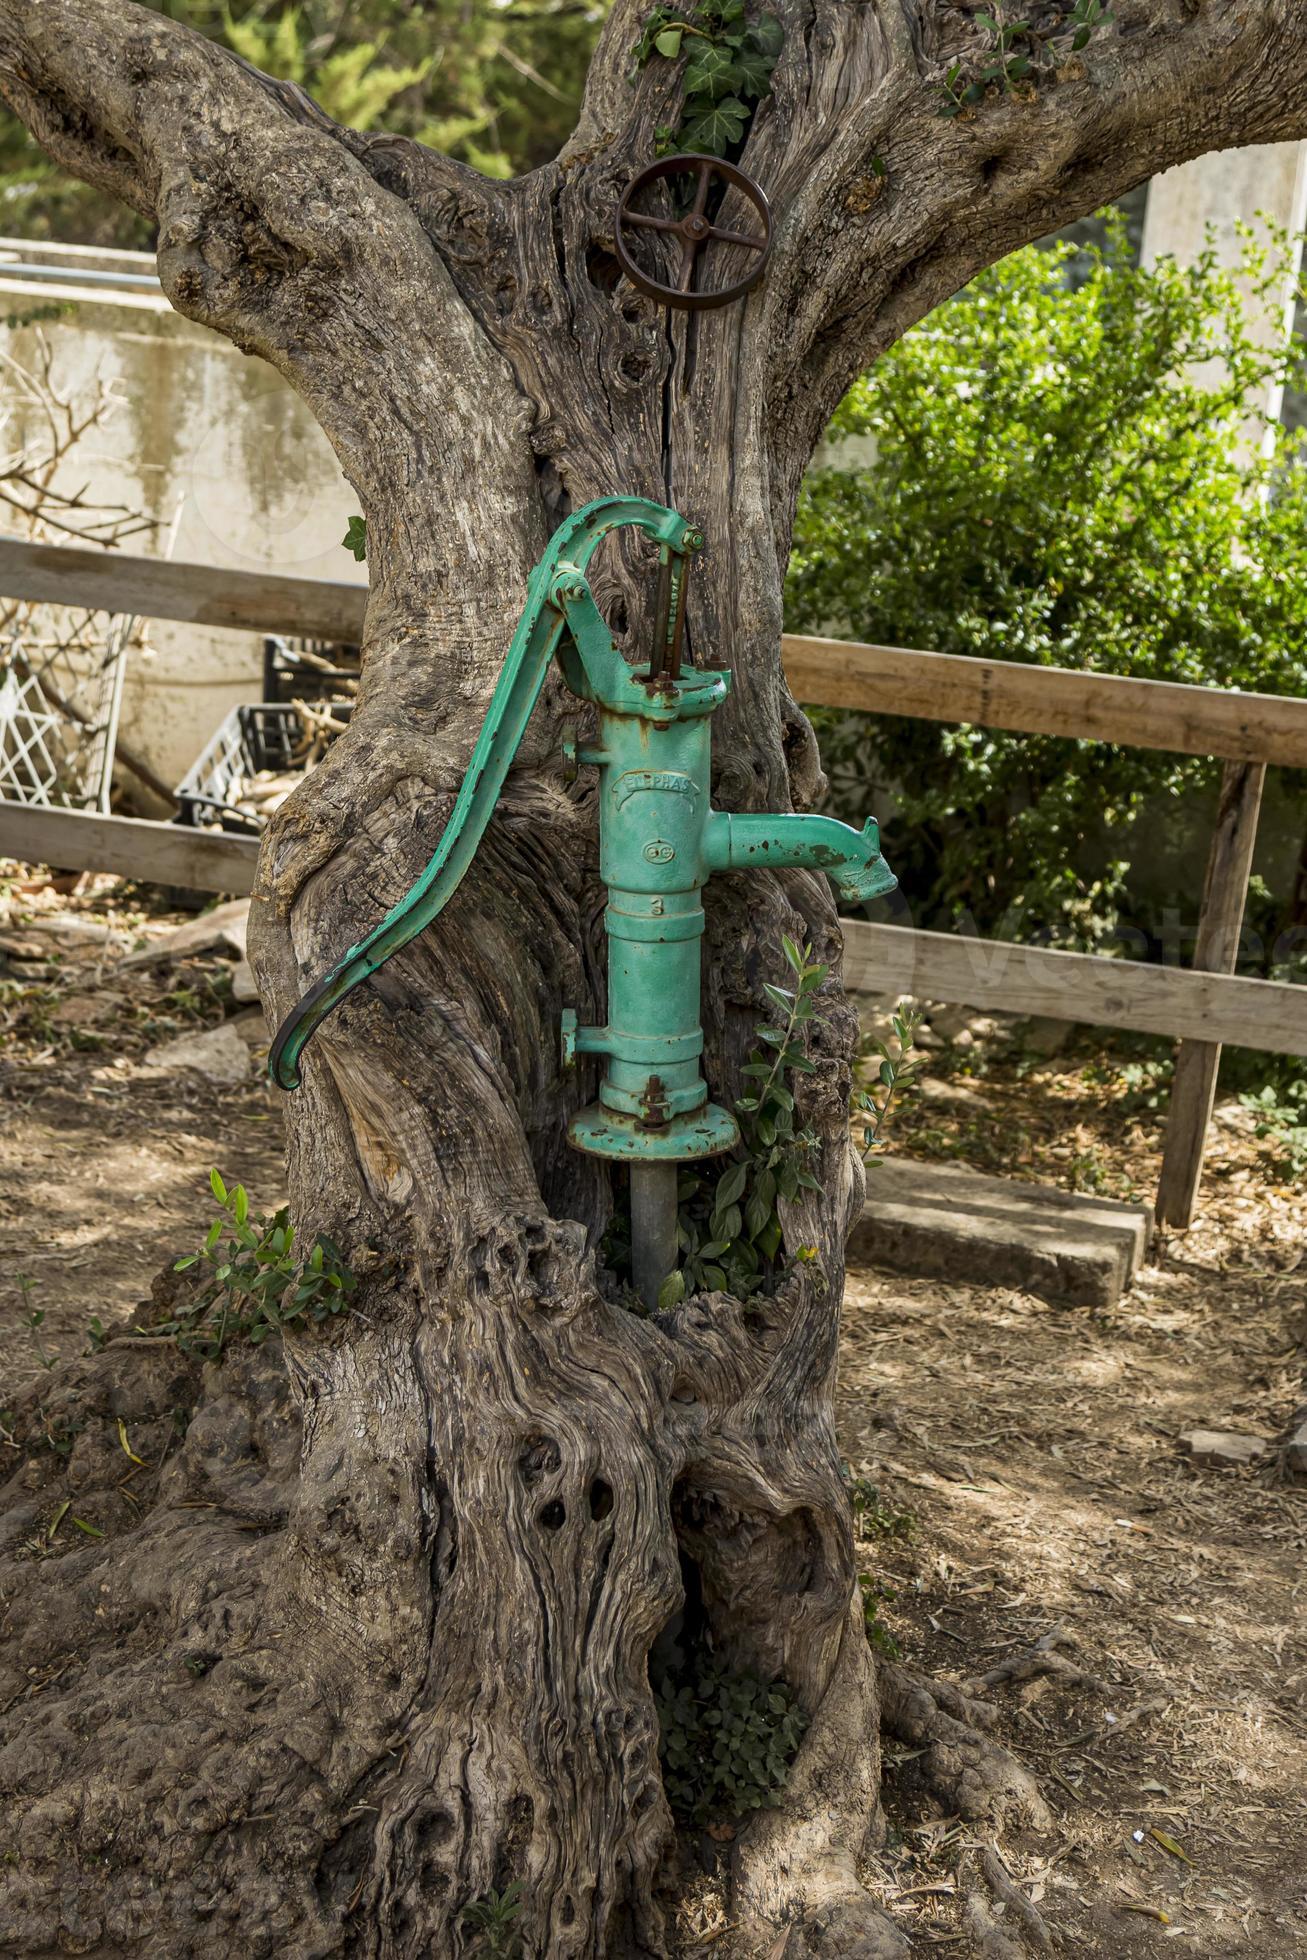 Alte Handwasserpumpe Am Brunnen Im Garten, Wassersparen In Dürrezeiten,  Gartenarbeit In Der Trockenzeit Lizenzfreie Fotos, Bilder und Stock  Fotografie. Image 96989868.